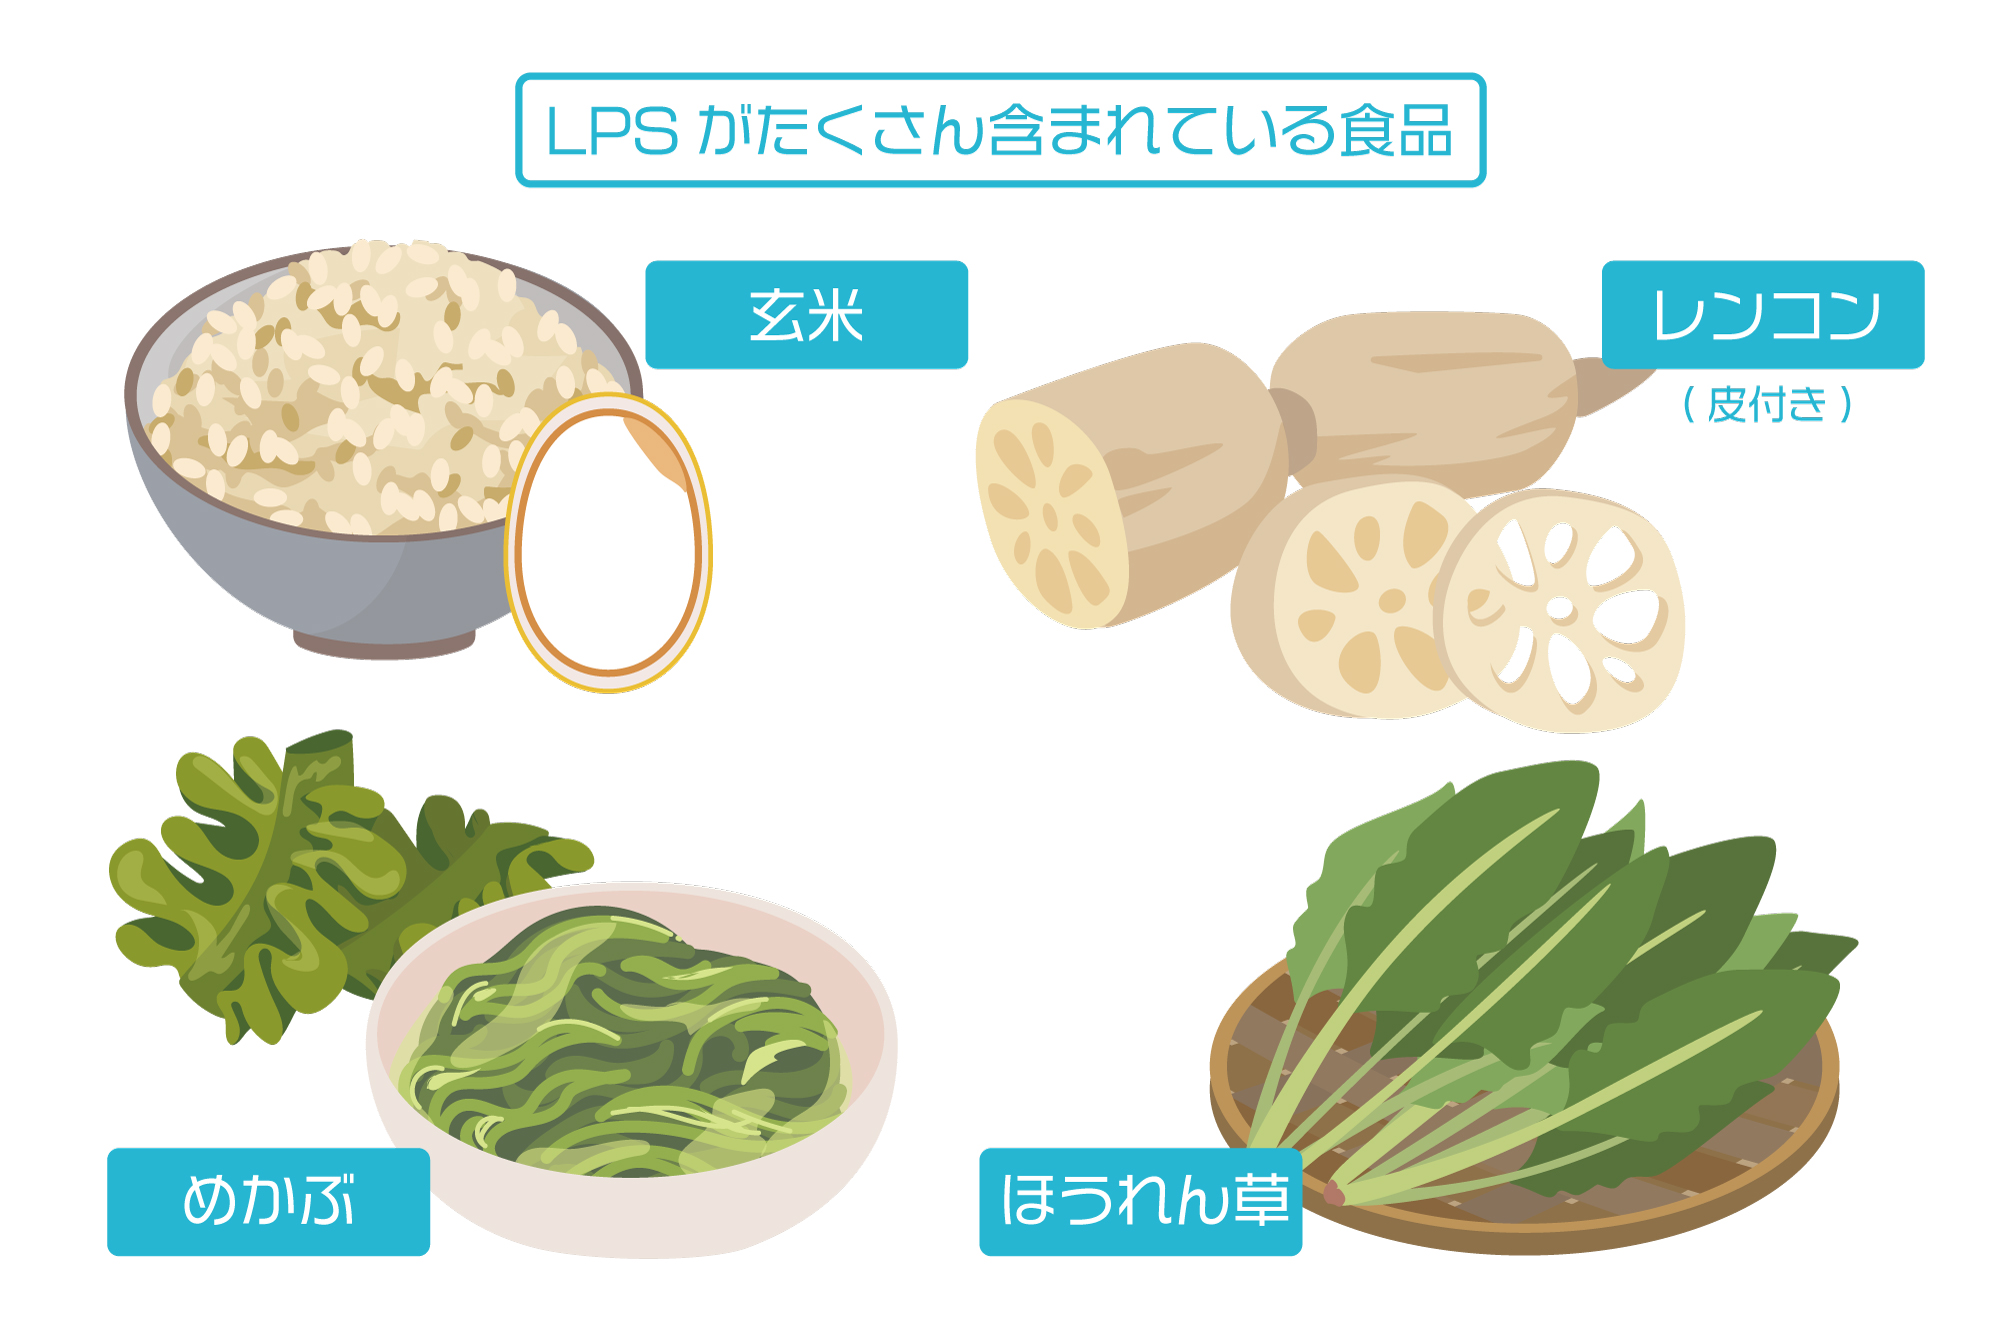 LPSの取り入れ方、LPSが含まれている食品、玄米、めかぶ、レンコン、ほうれん草、根菜類、葉物類